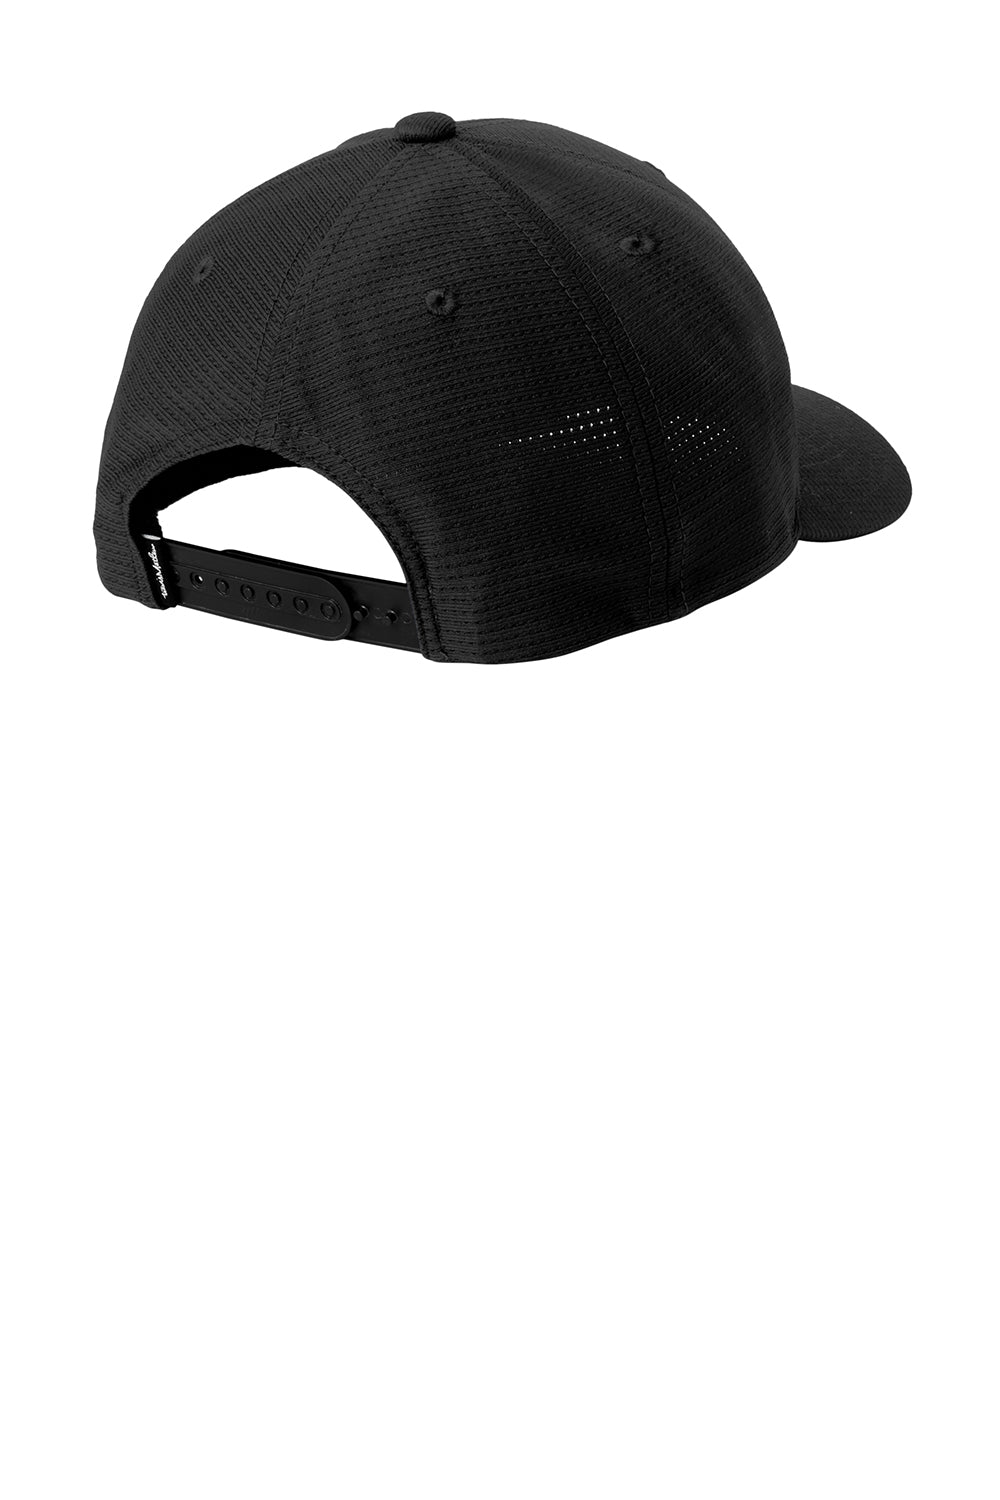 TravisMathew TM1MZ335  Front Icon Snapback Hat Black Flat Back